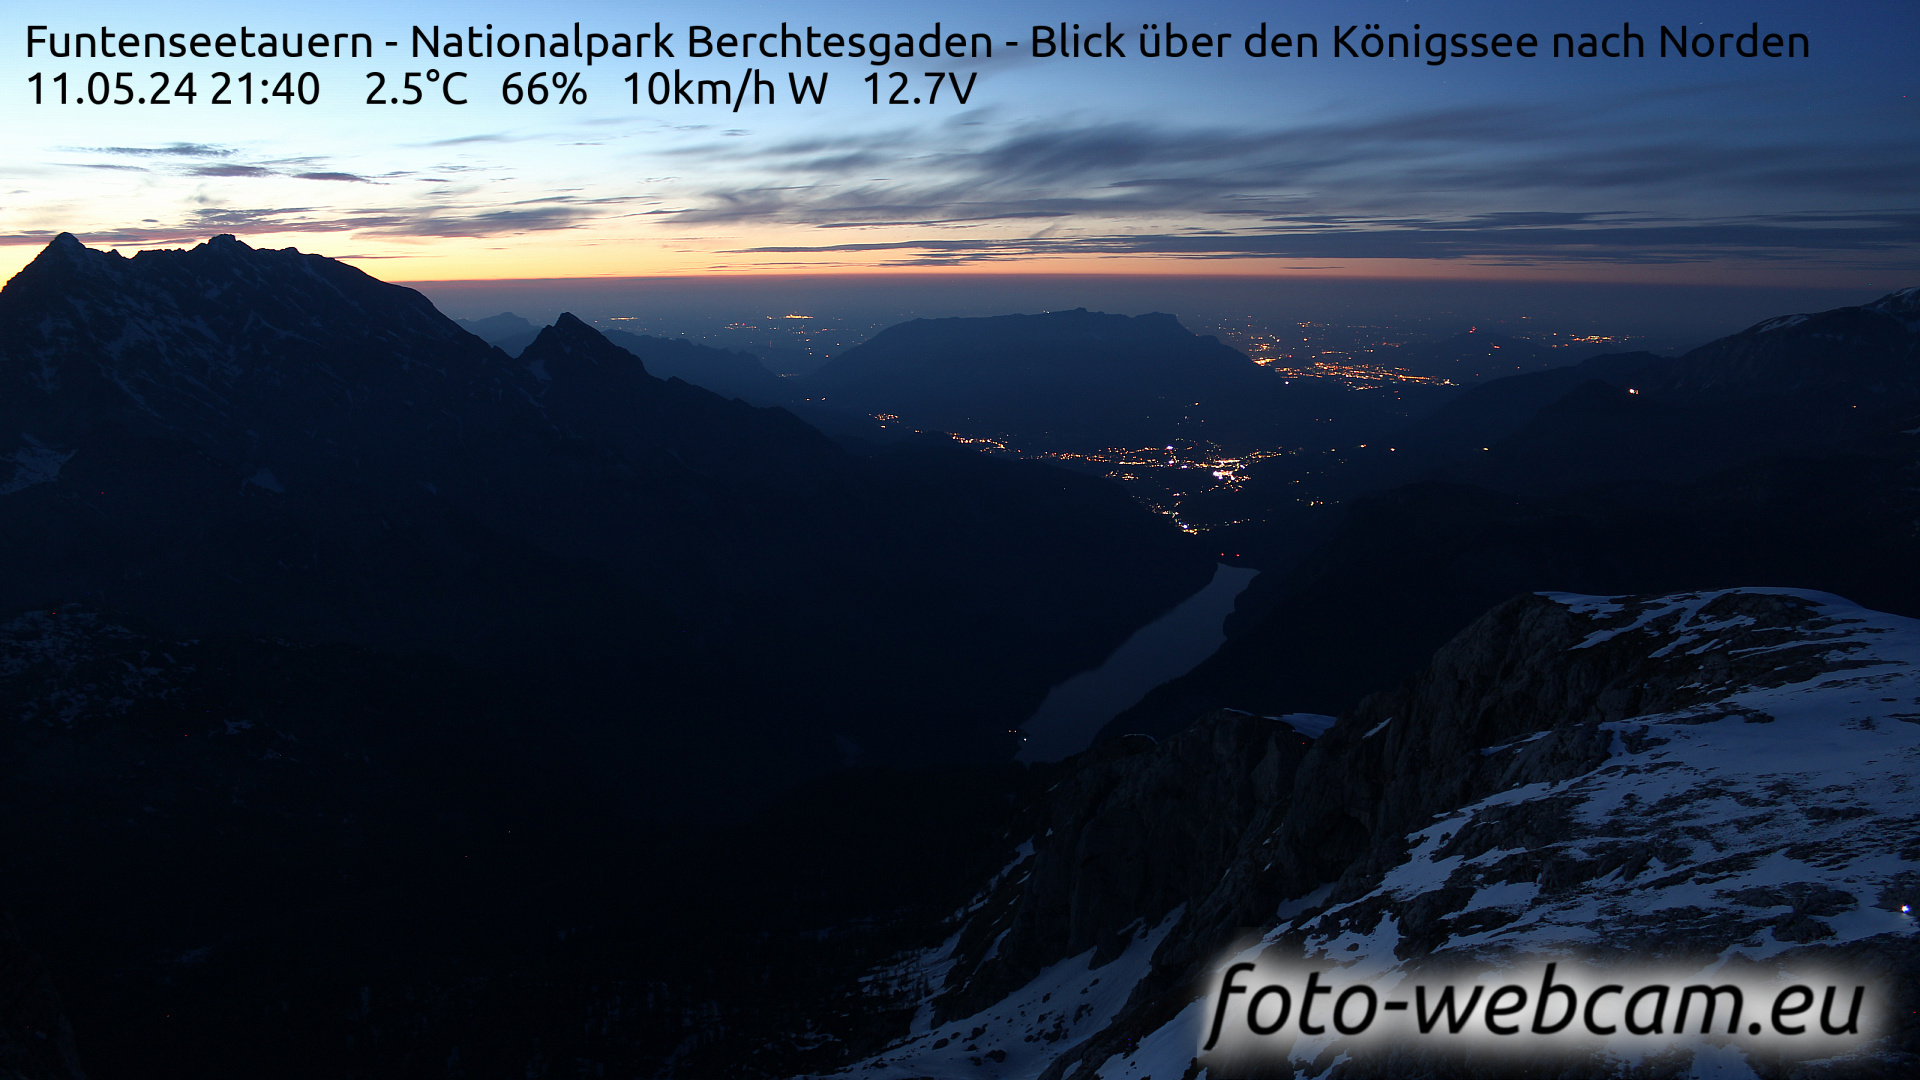 Berchtesgaden Thu. 21:48